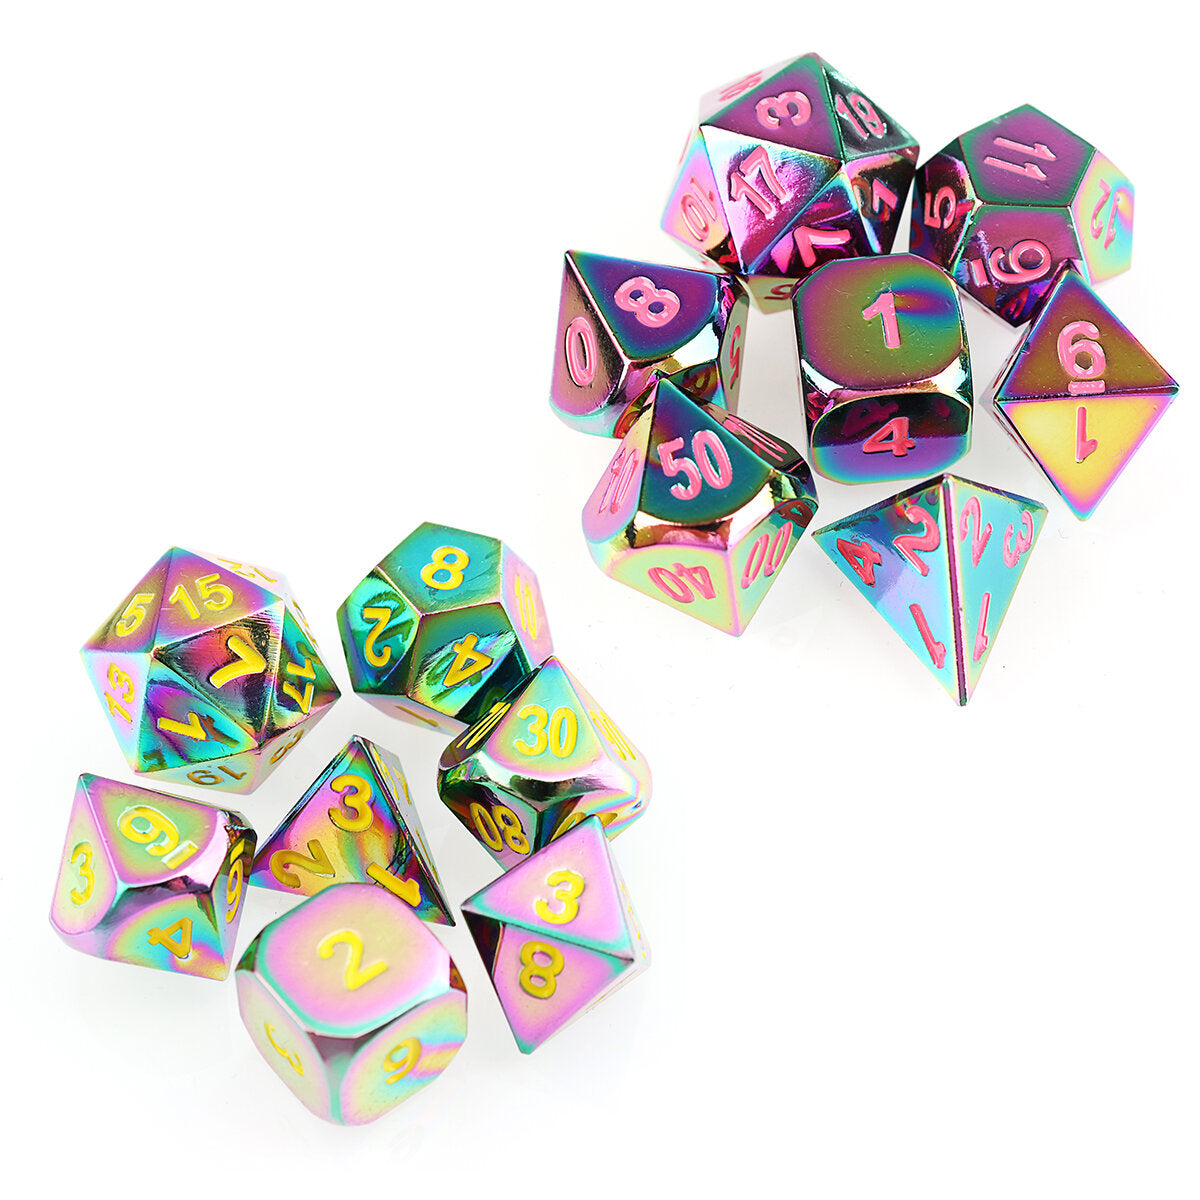 7 stuks reliëf heavy metal polyhedral dice dnd rpg mtg rollenspel met tas